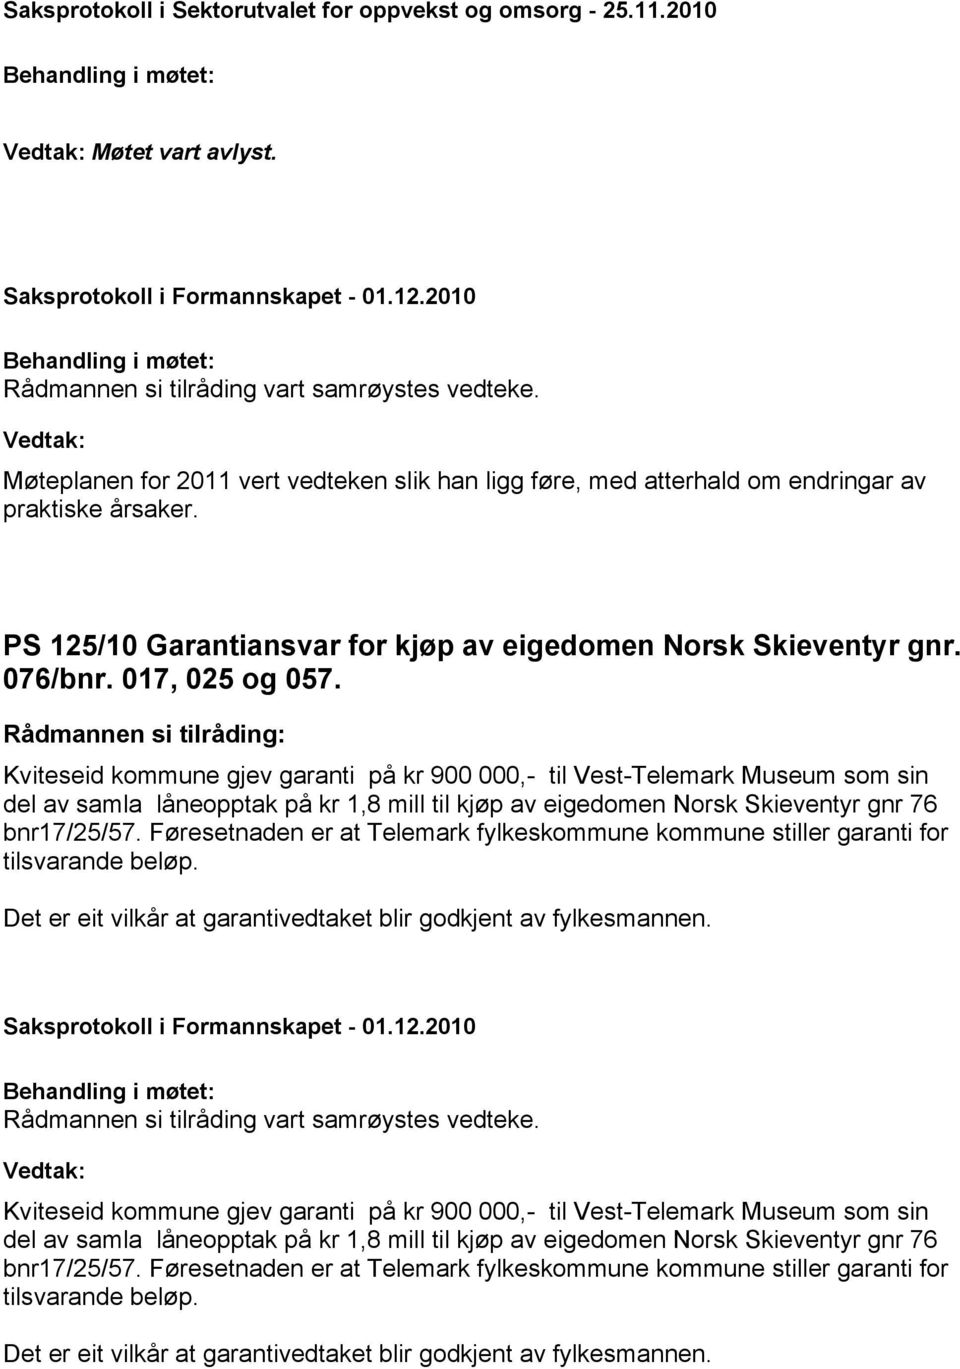 Kviteseid kommune gjev garanti på kr 900 000,- til Vest-Telemark Museum som sin del av samla låneopptak på kr 1,8 mill til kjøp av eigedomen Norsk Skieventyr gnr 76 bnr17/25/57.